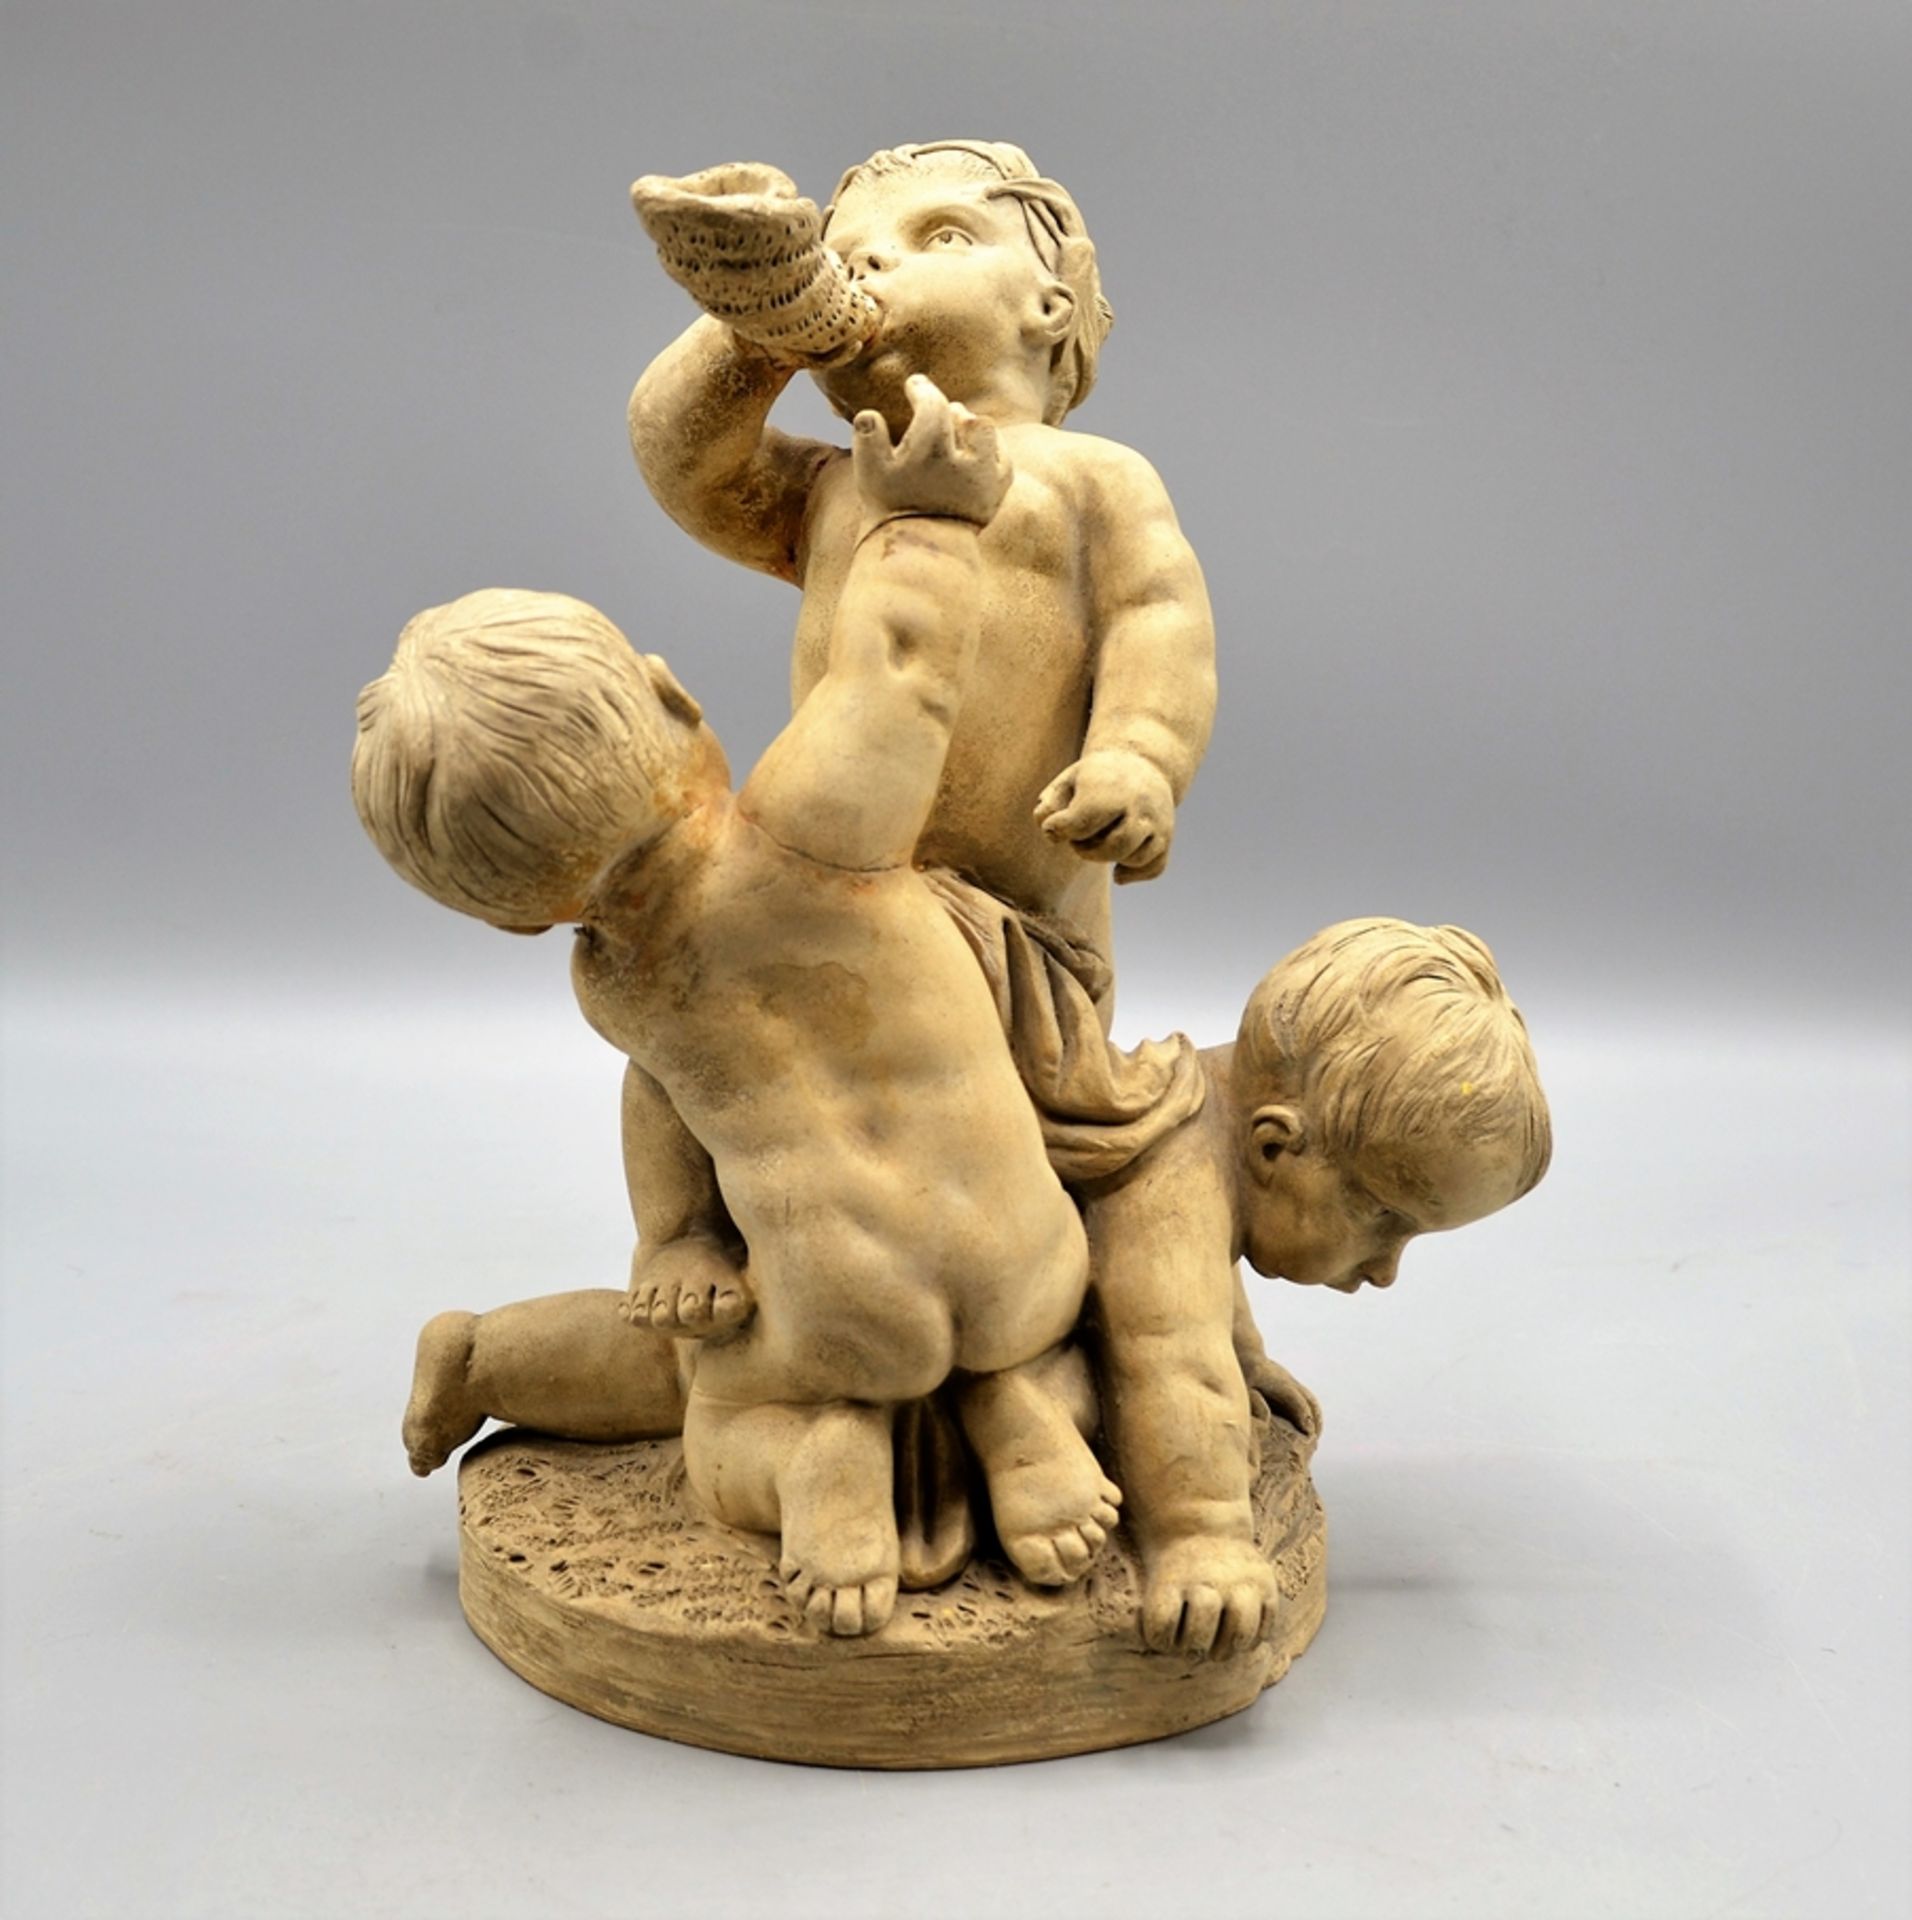 Dekorative Putti Gruppe Keramik um 1900, insg. 3 Putti, 1 Finger fehlt, 3 geklebte Bruchstellen, ca